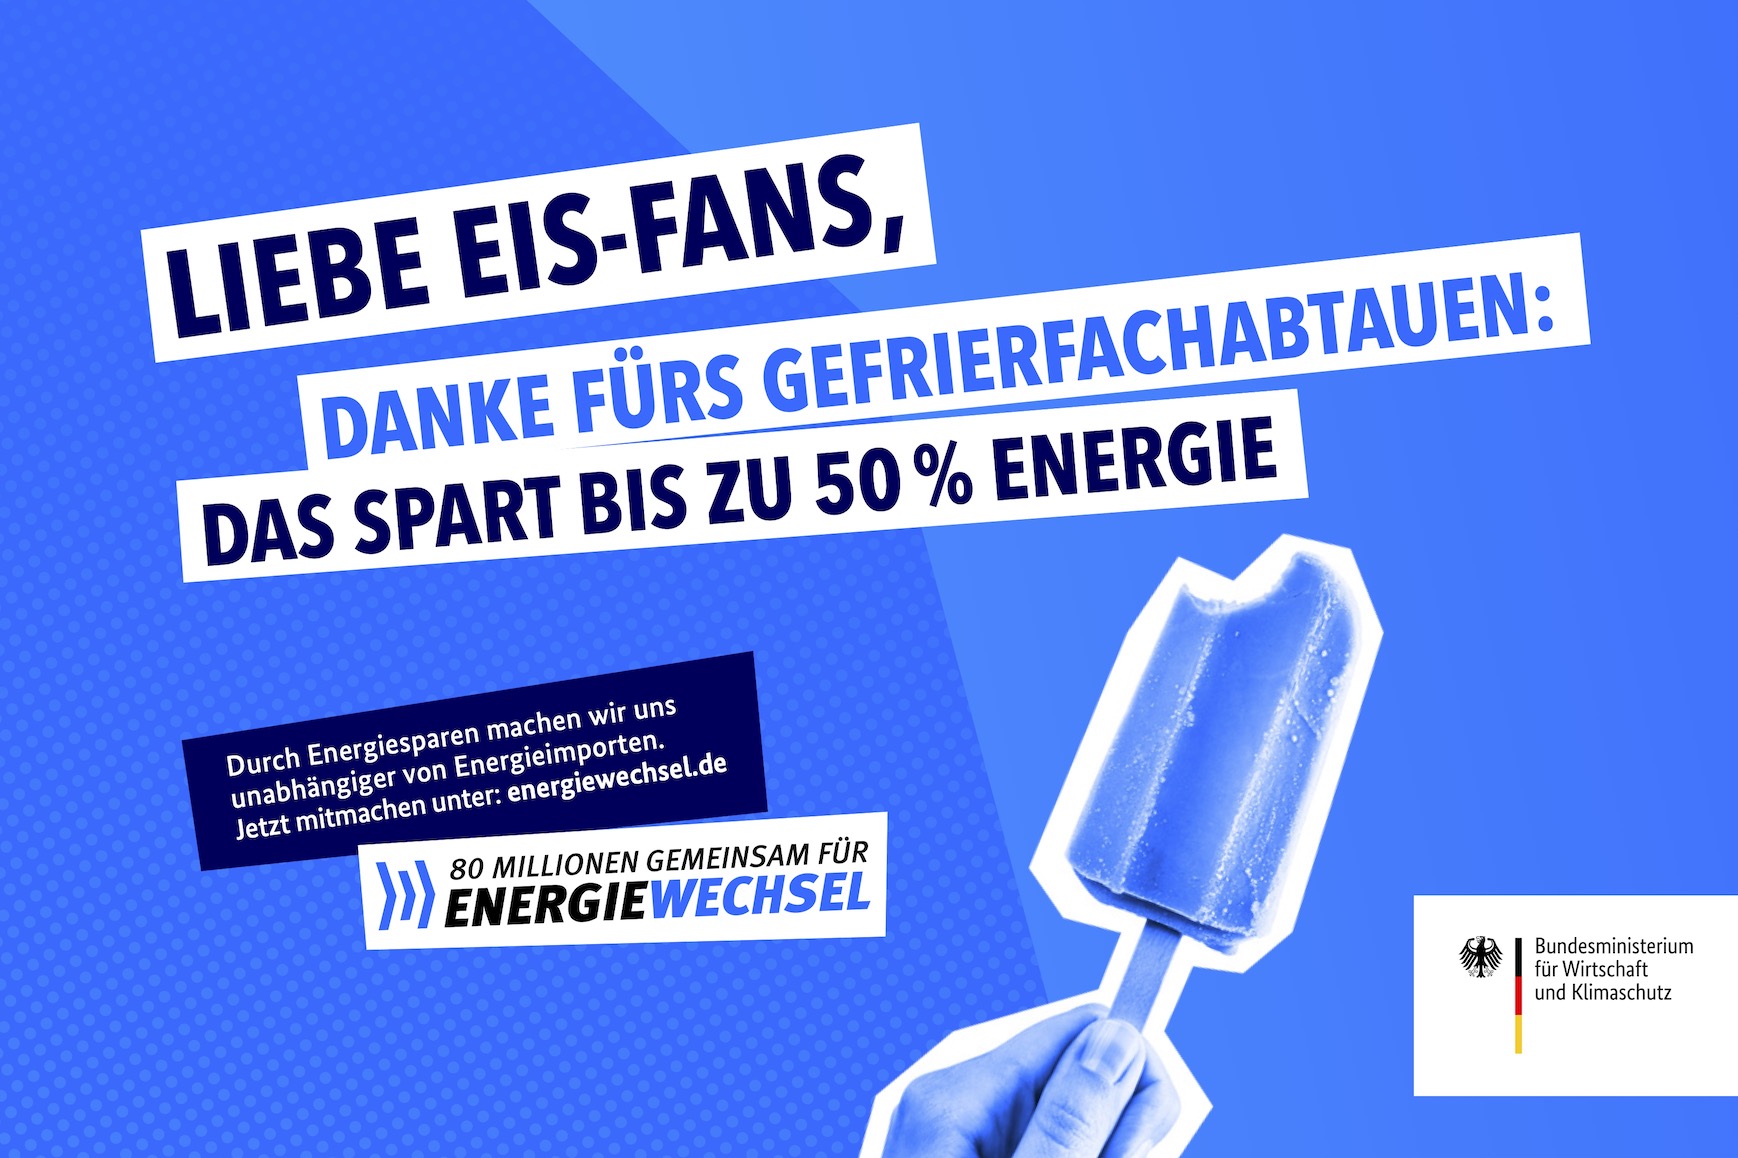 Kampagnenmotiv „Liebe Eisfans” | 80 Millionen gemeinsam für Energiewechsel